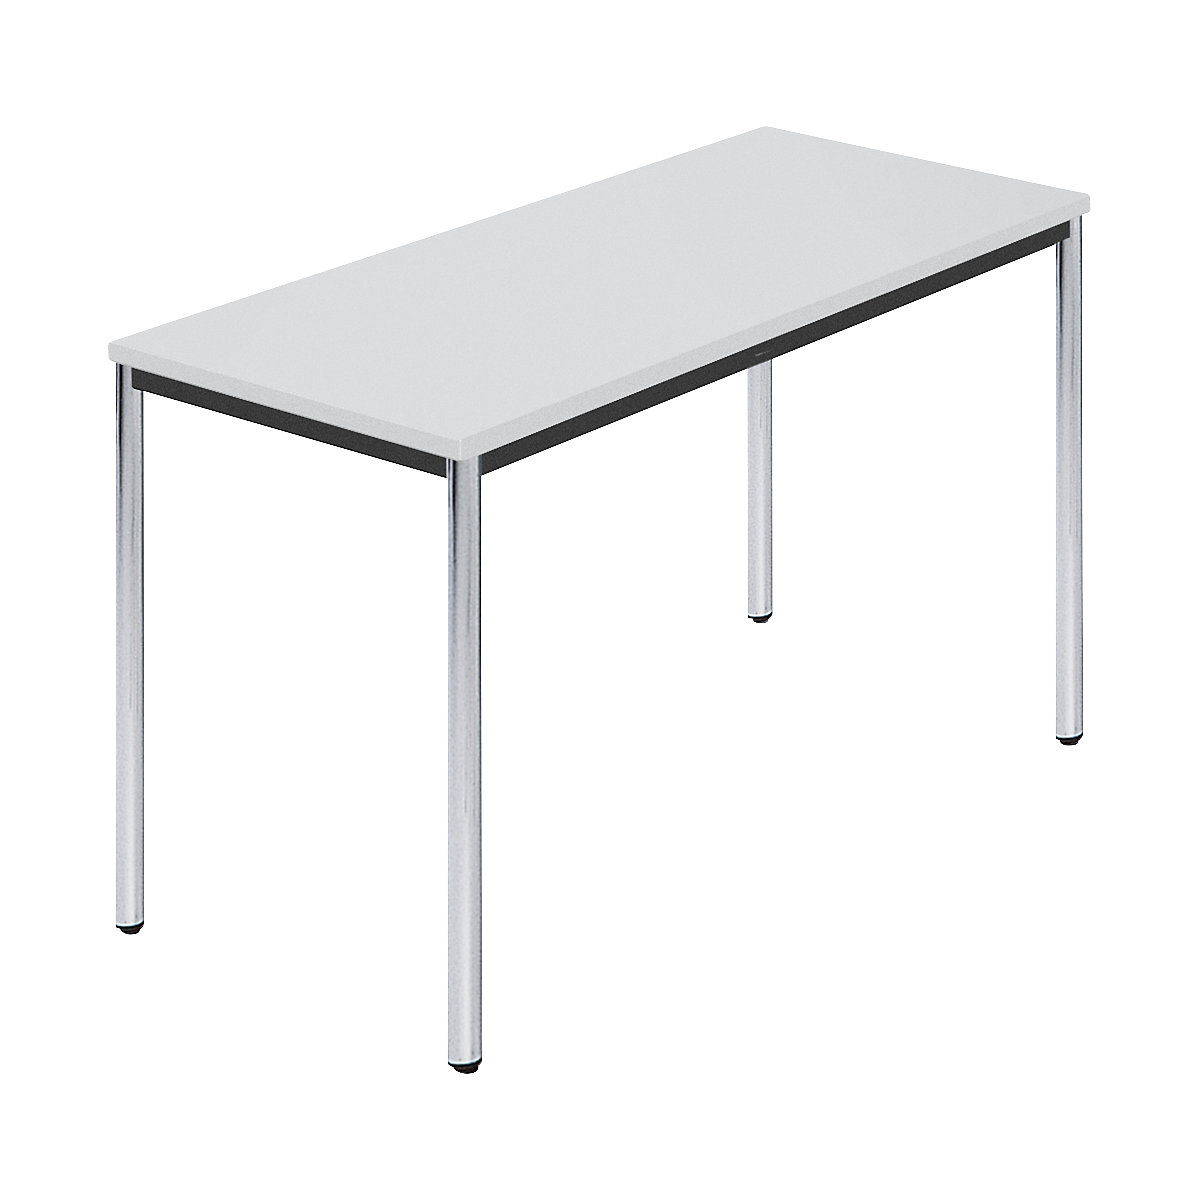 Rechthoekige tafel, met ronde, verchroomde tafelpoten, b x d = 1200 x 600 mm, grijs-6